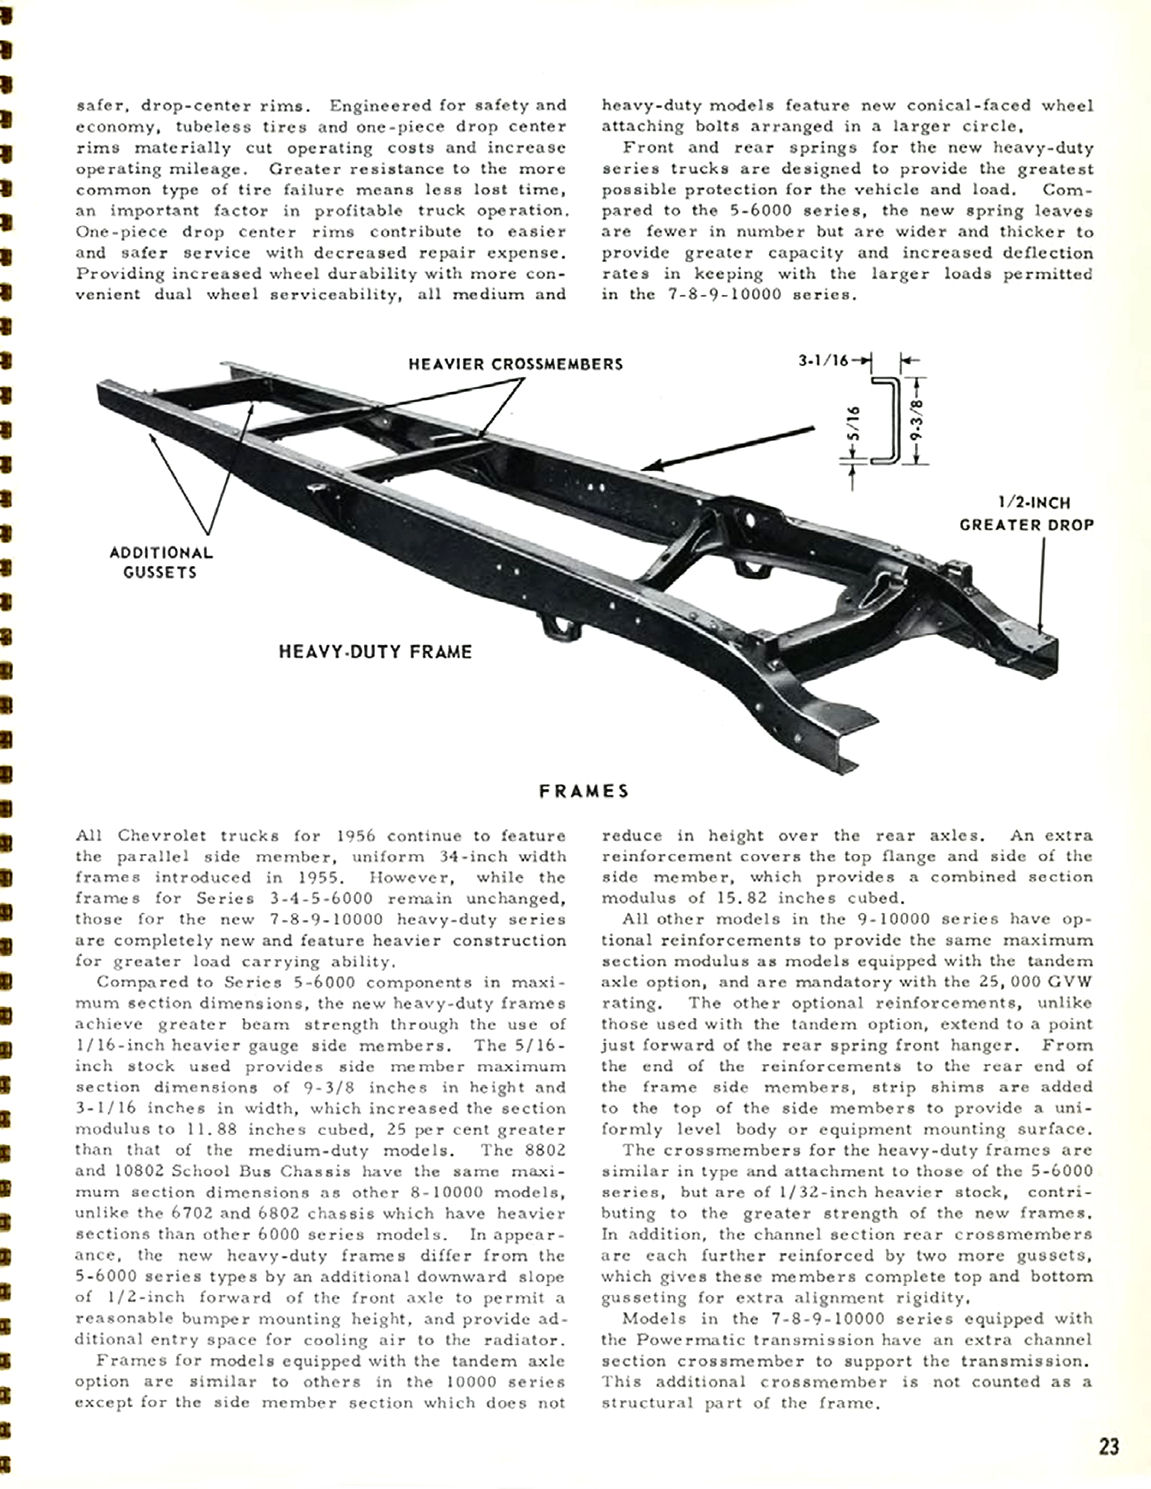 1956_Chevrolet_Truck_Engineering_Features-23